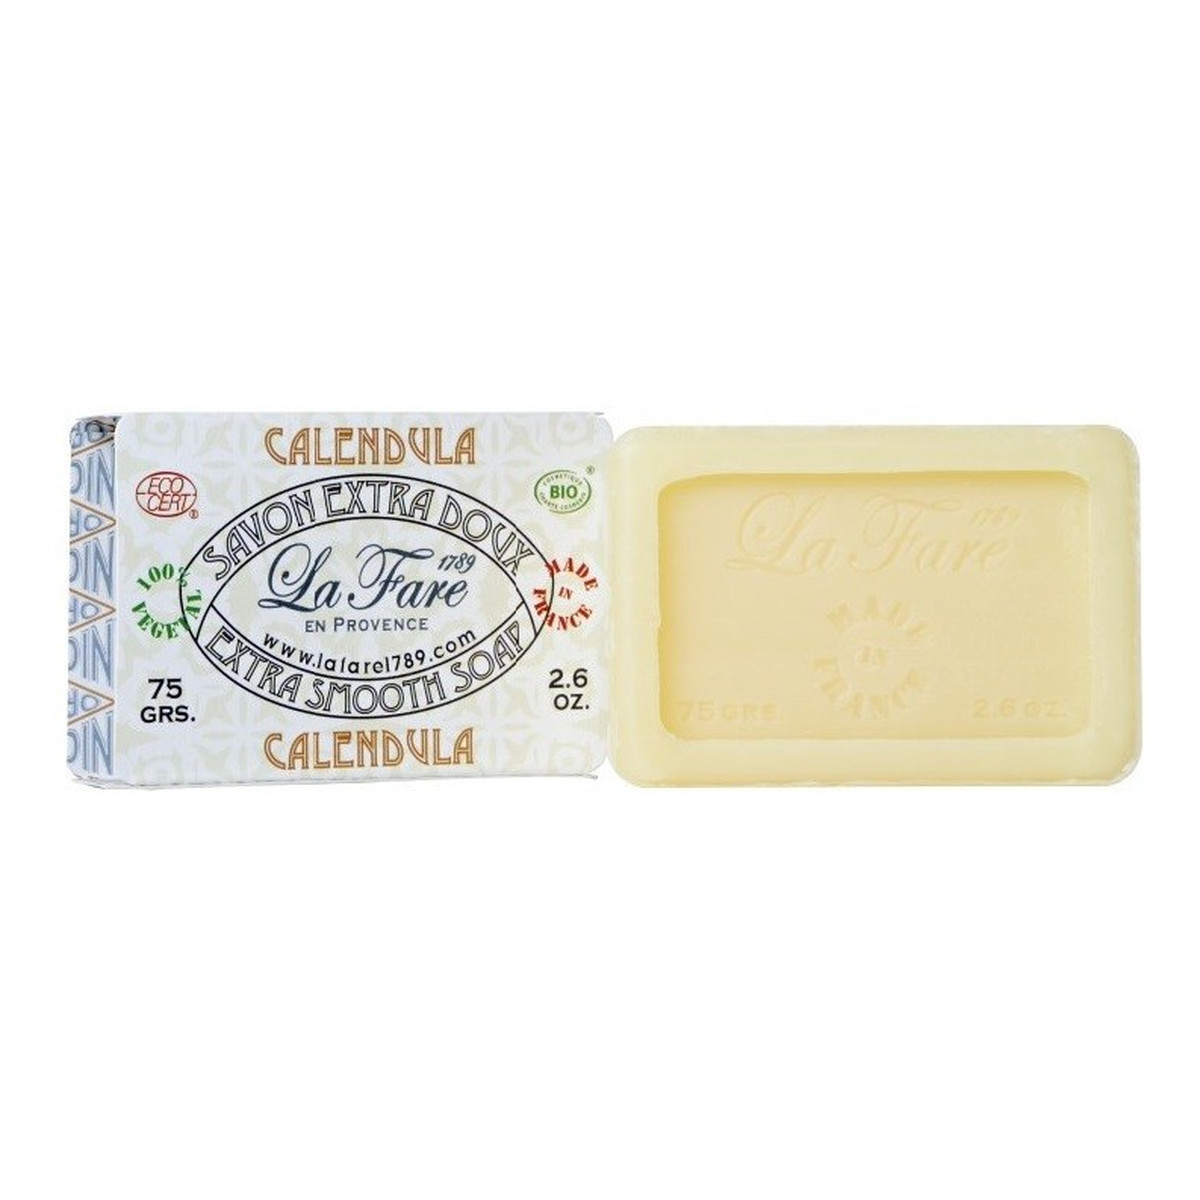 La Fare 1789 Extra Smooth Soap Organiczne Mydło Pielęgnacyjne Nagietkowe Calendula 75g